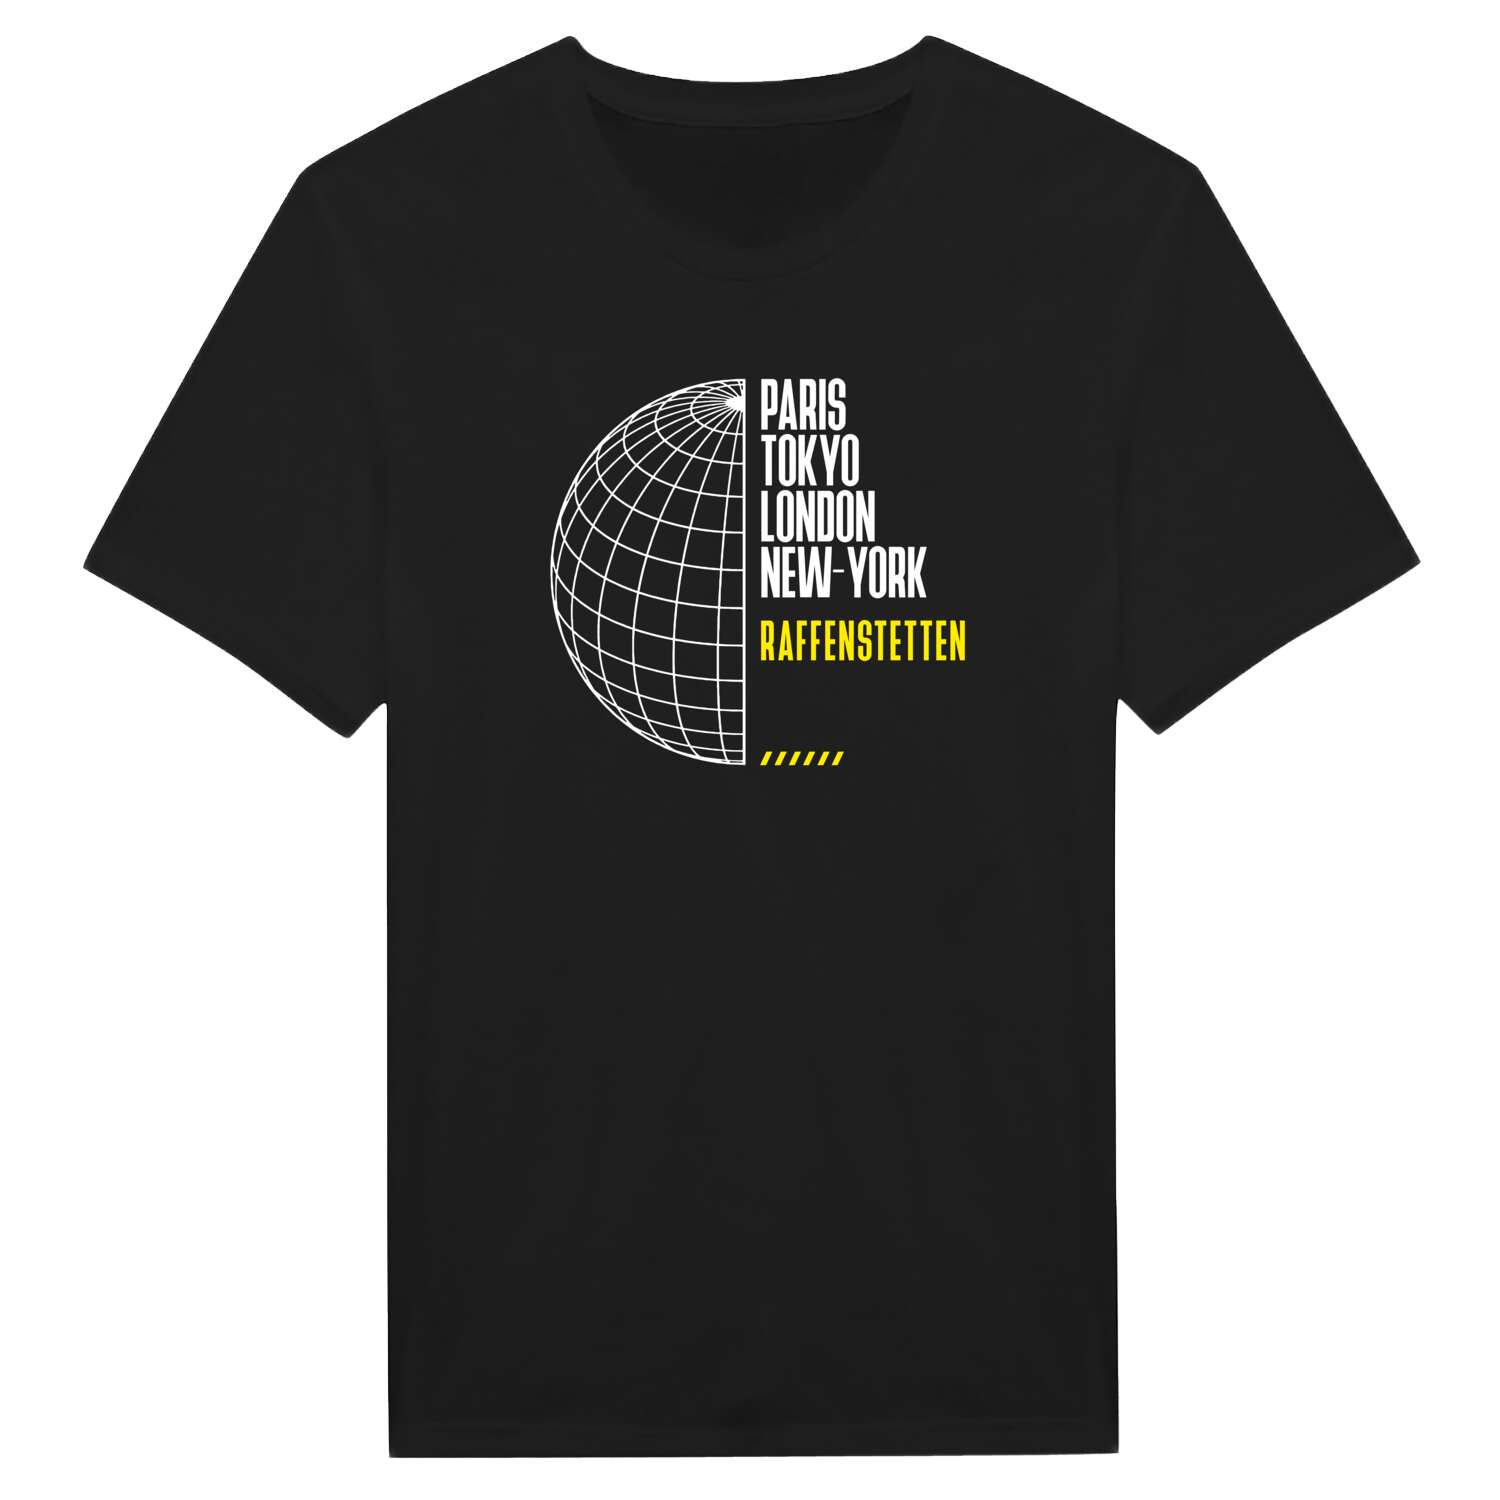 Raffenstetten T-Shirt »Paris Tokyo London«